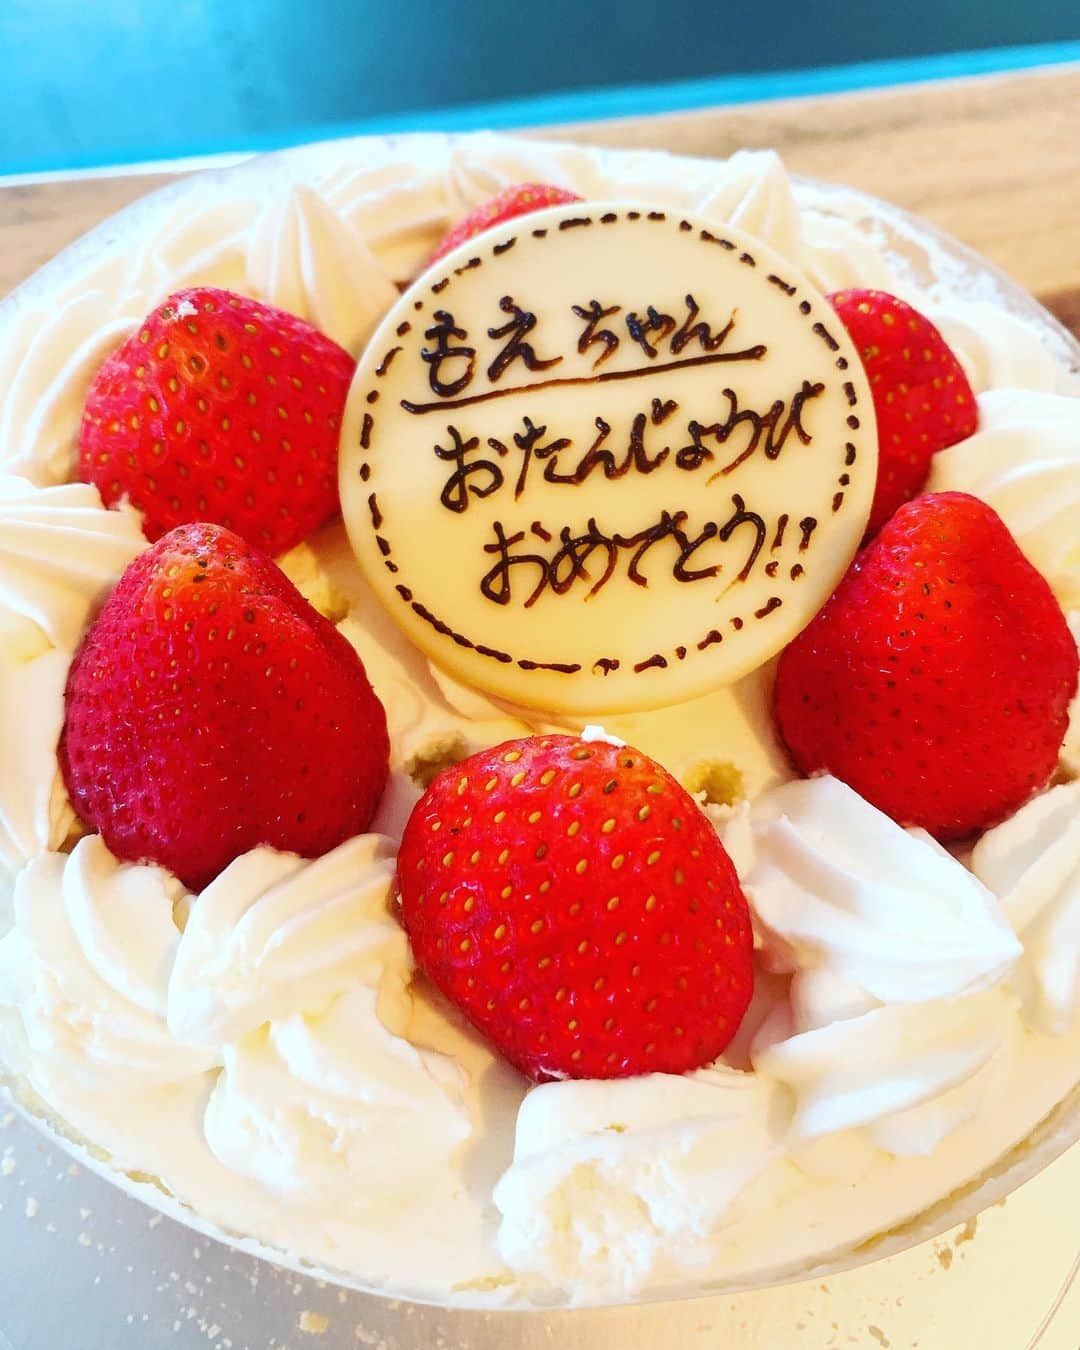 愛純もえりのインスタグラム：「肝心のケーキ載せ忘れた💦🎂 私とした事が。。。 . . 彩音ちゃんの旦那さまがわざわざ買いに行ってくださって😭 ありがたい事でございますっ❤️ #誕生日ケーキは格別だね」